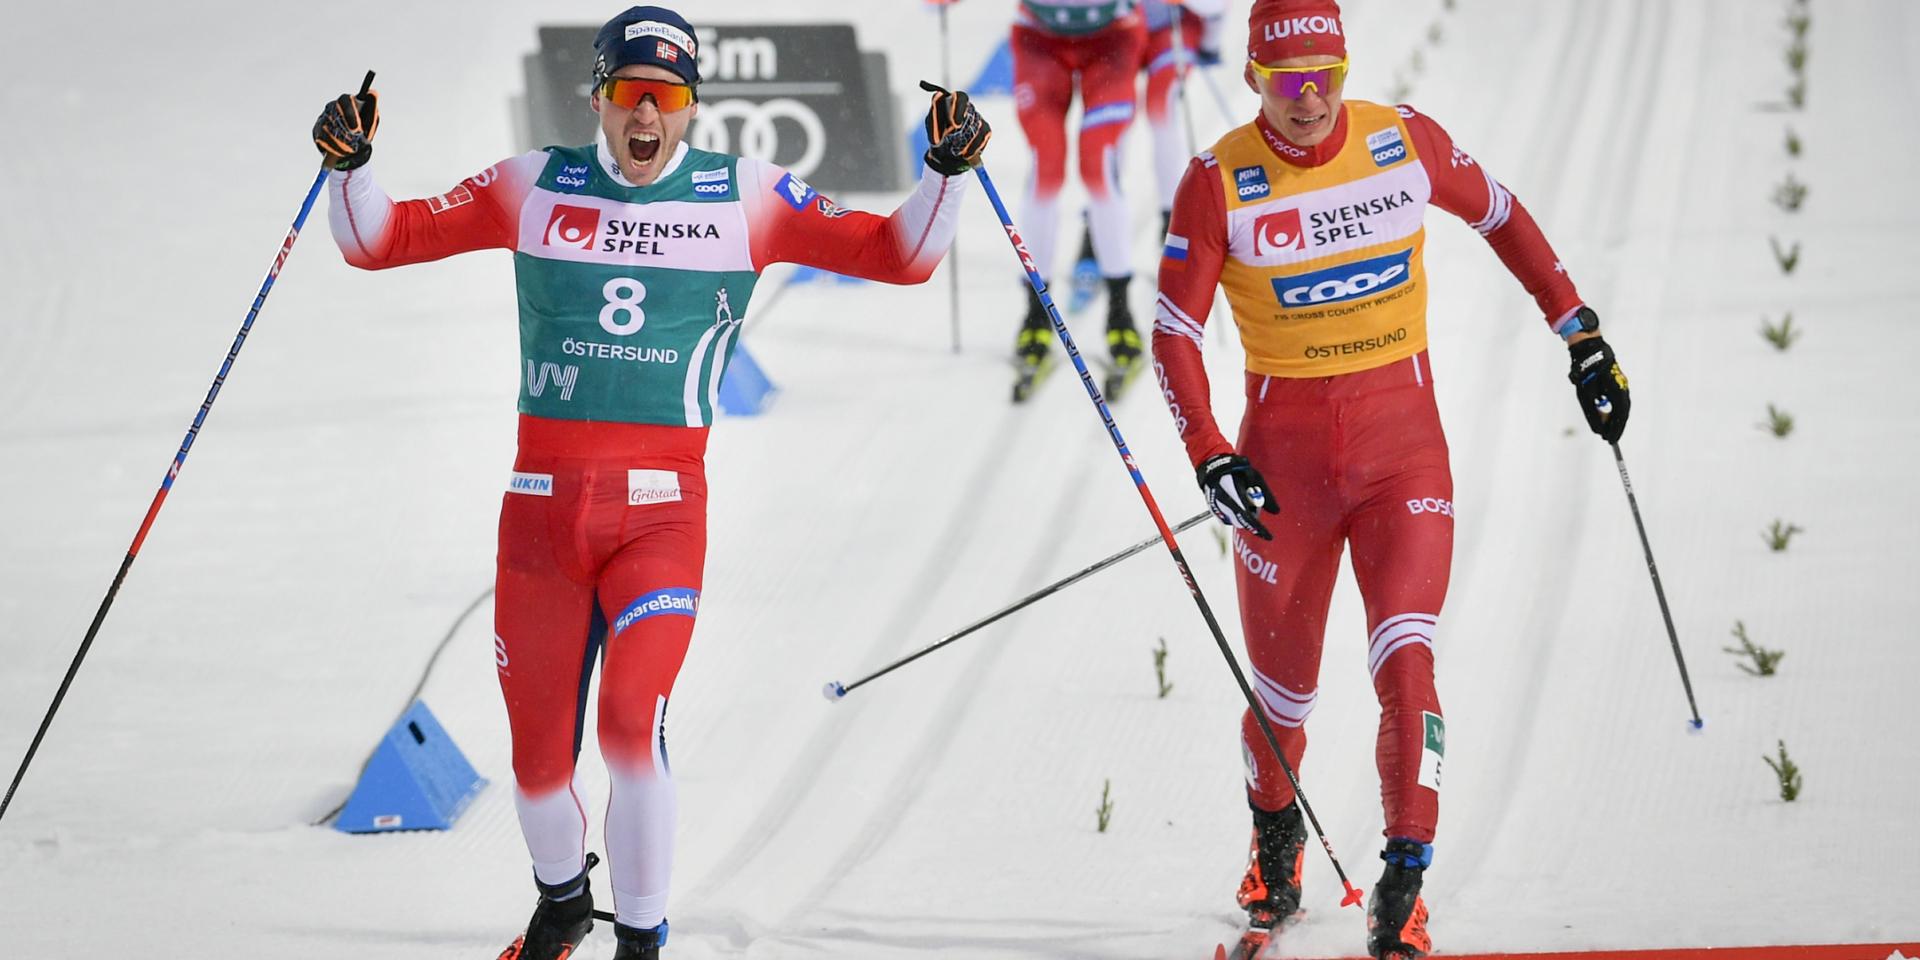 Norges Pål Golberg (vänster) åker i mål som vinnare före Rysslands Alexander Bolsjunov.